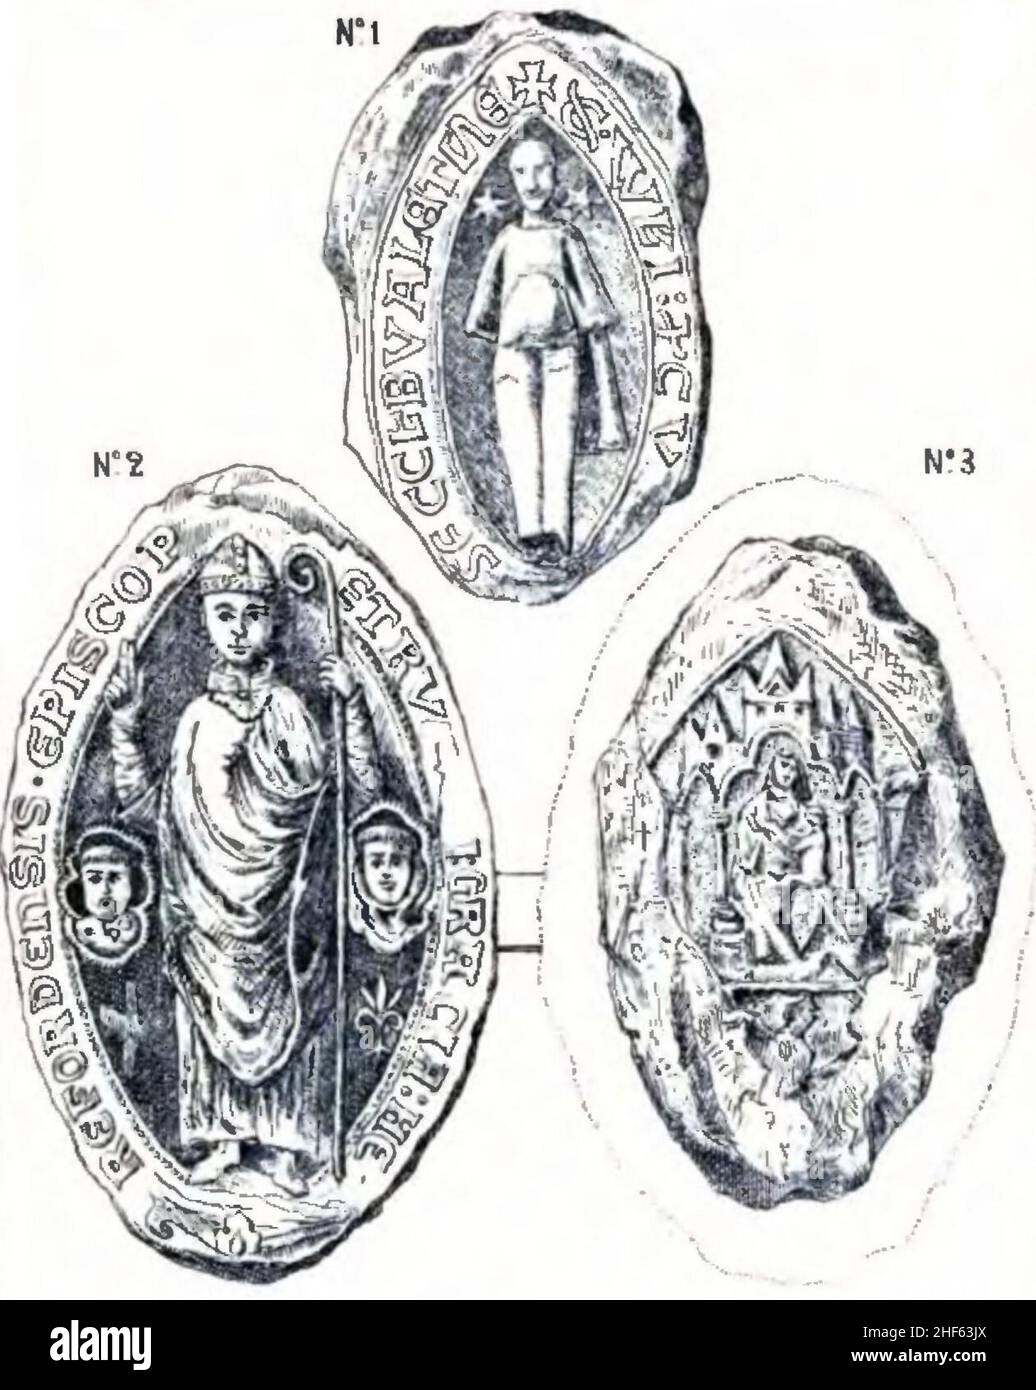 Sceaux extrait des Savoyards en Angleterre au XIIIème siècle et Pierre d’Aigueblanche évêque d’Héreford. Banque D'Images